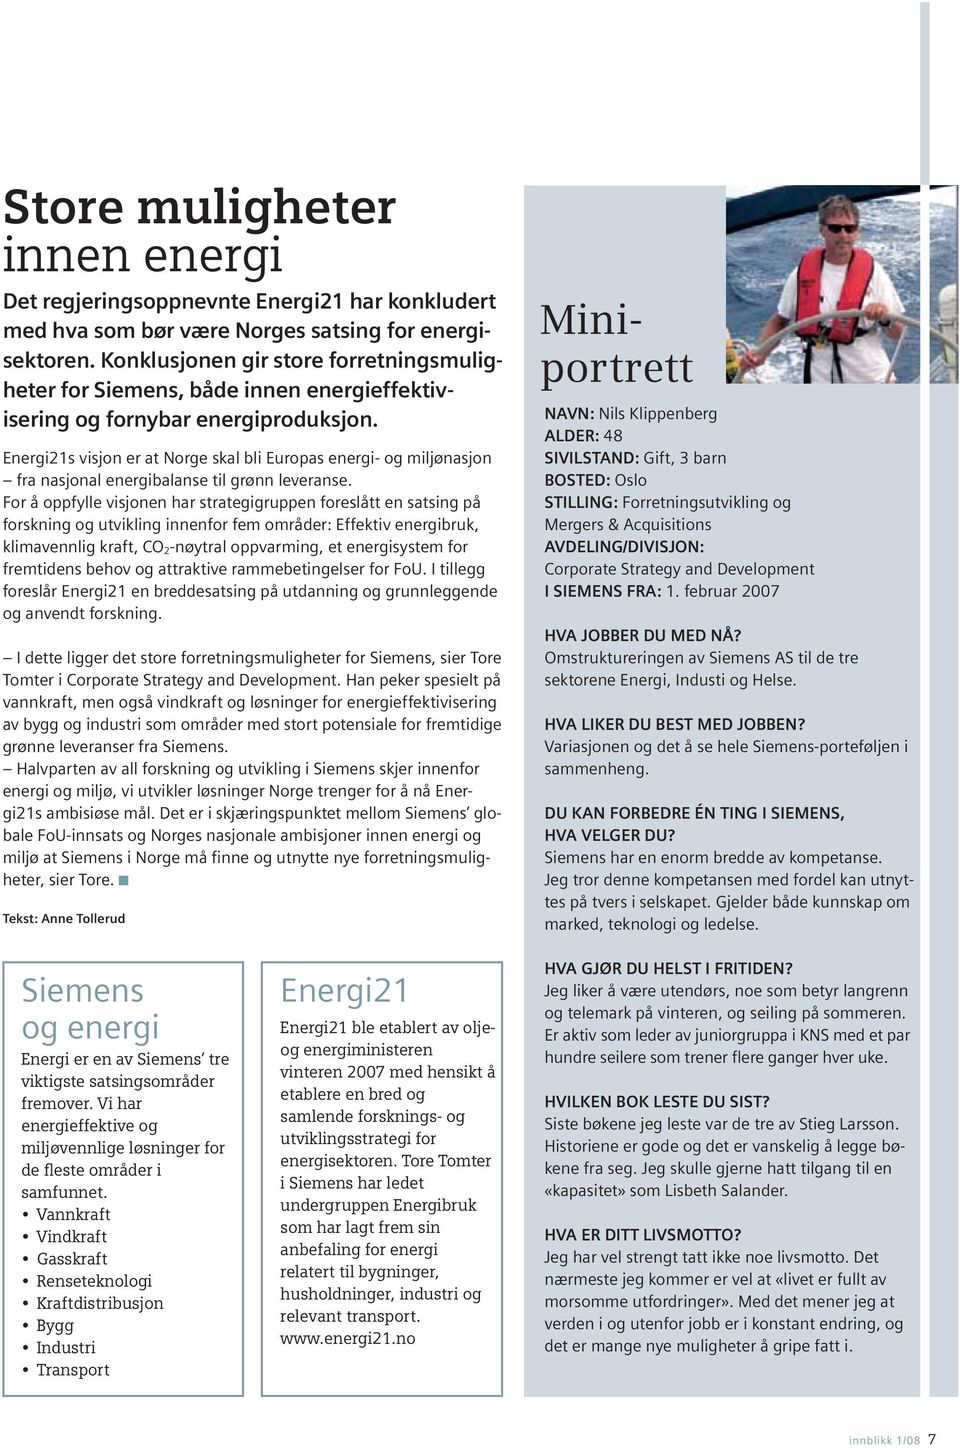 Energi21s visjon er at Norge skal bli Europas energi- og miljønasjon fra nasjonal energibalanse til grønn leveranse.